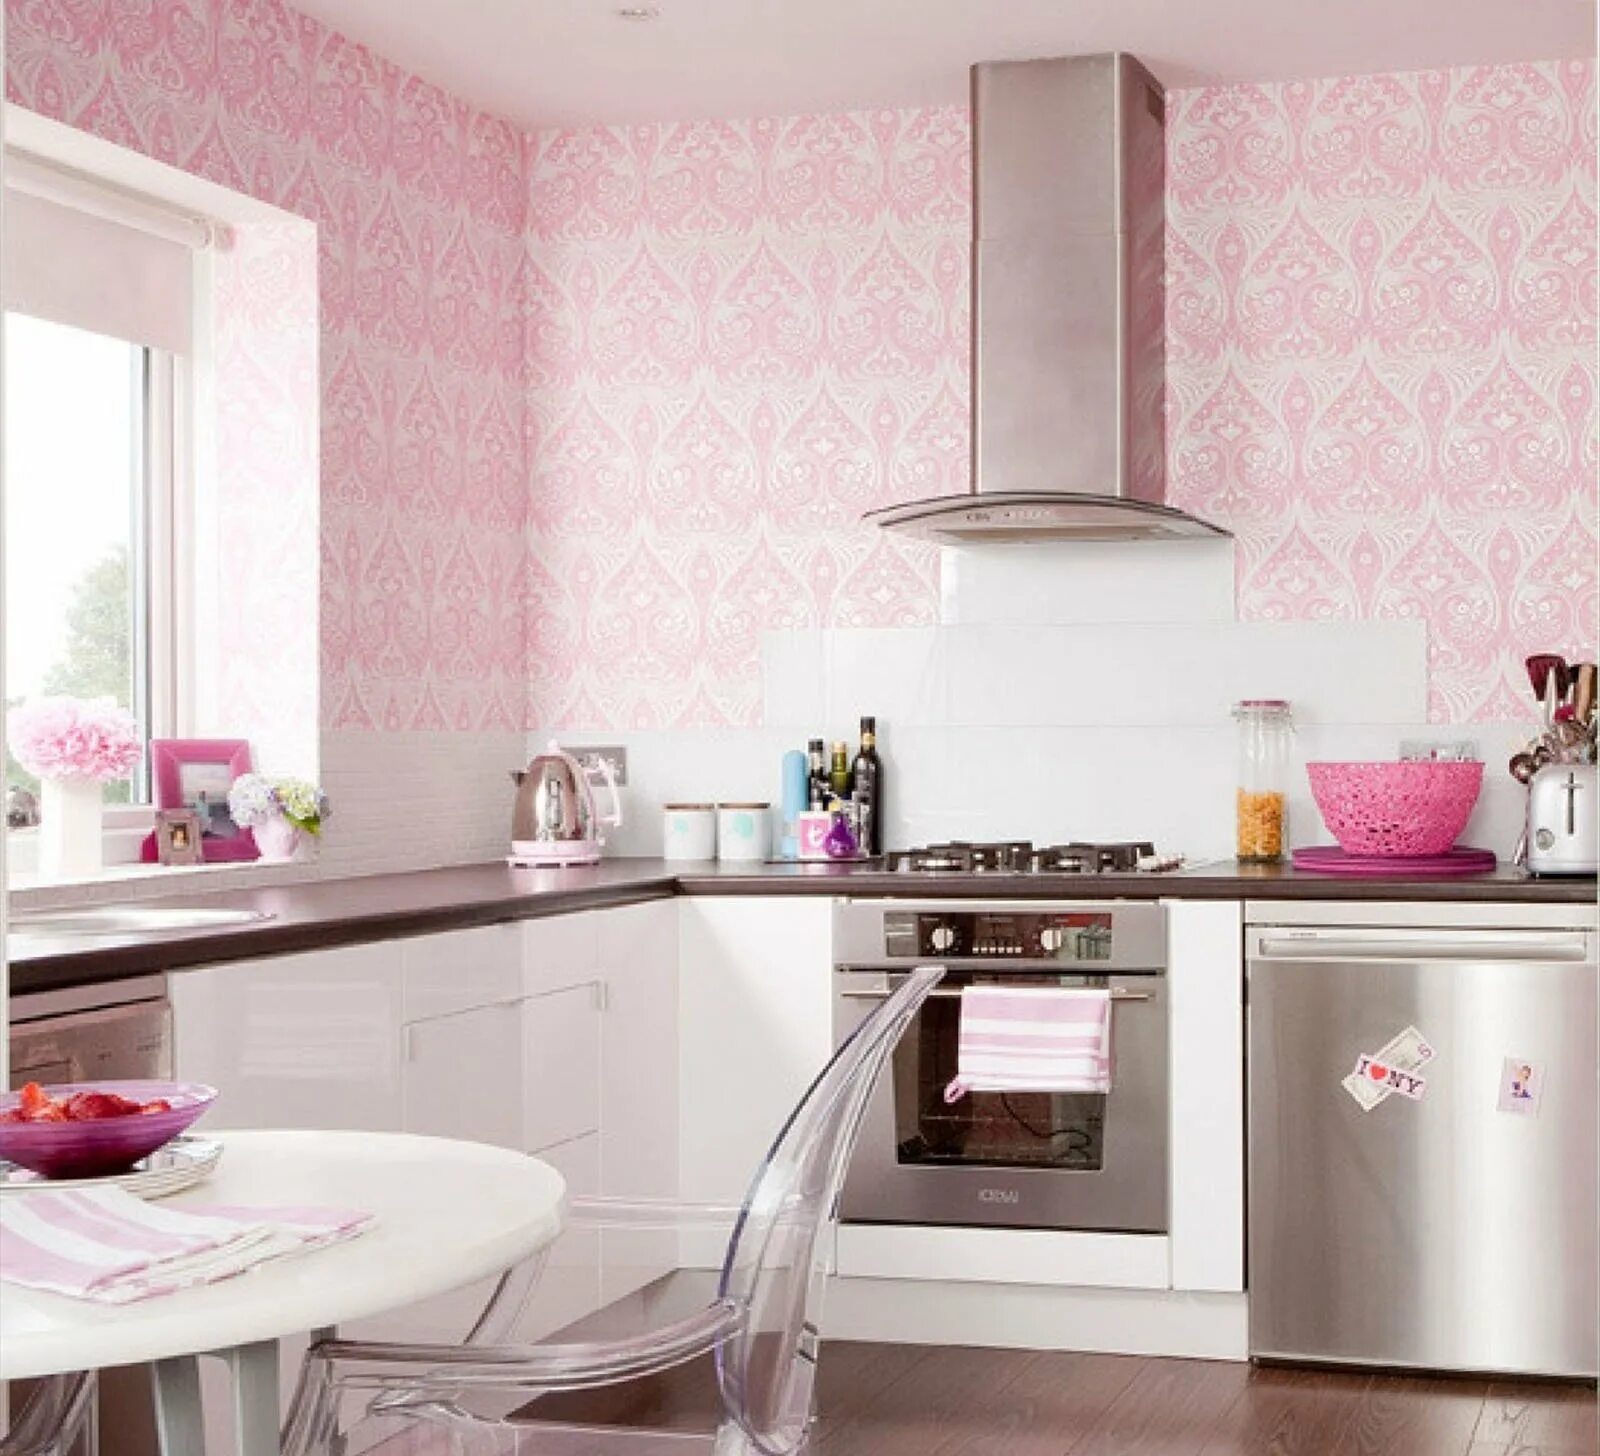 Как подобрать обои на кухню. Розовая кухня в интерьере. В ореховом цвете кухня интерьер. Розовый цвет в интерьере кухни. Интерьер кухни в нежно розовых тонах.